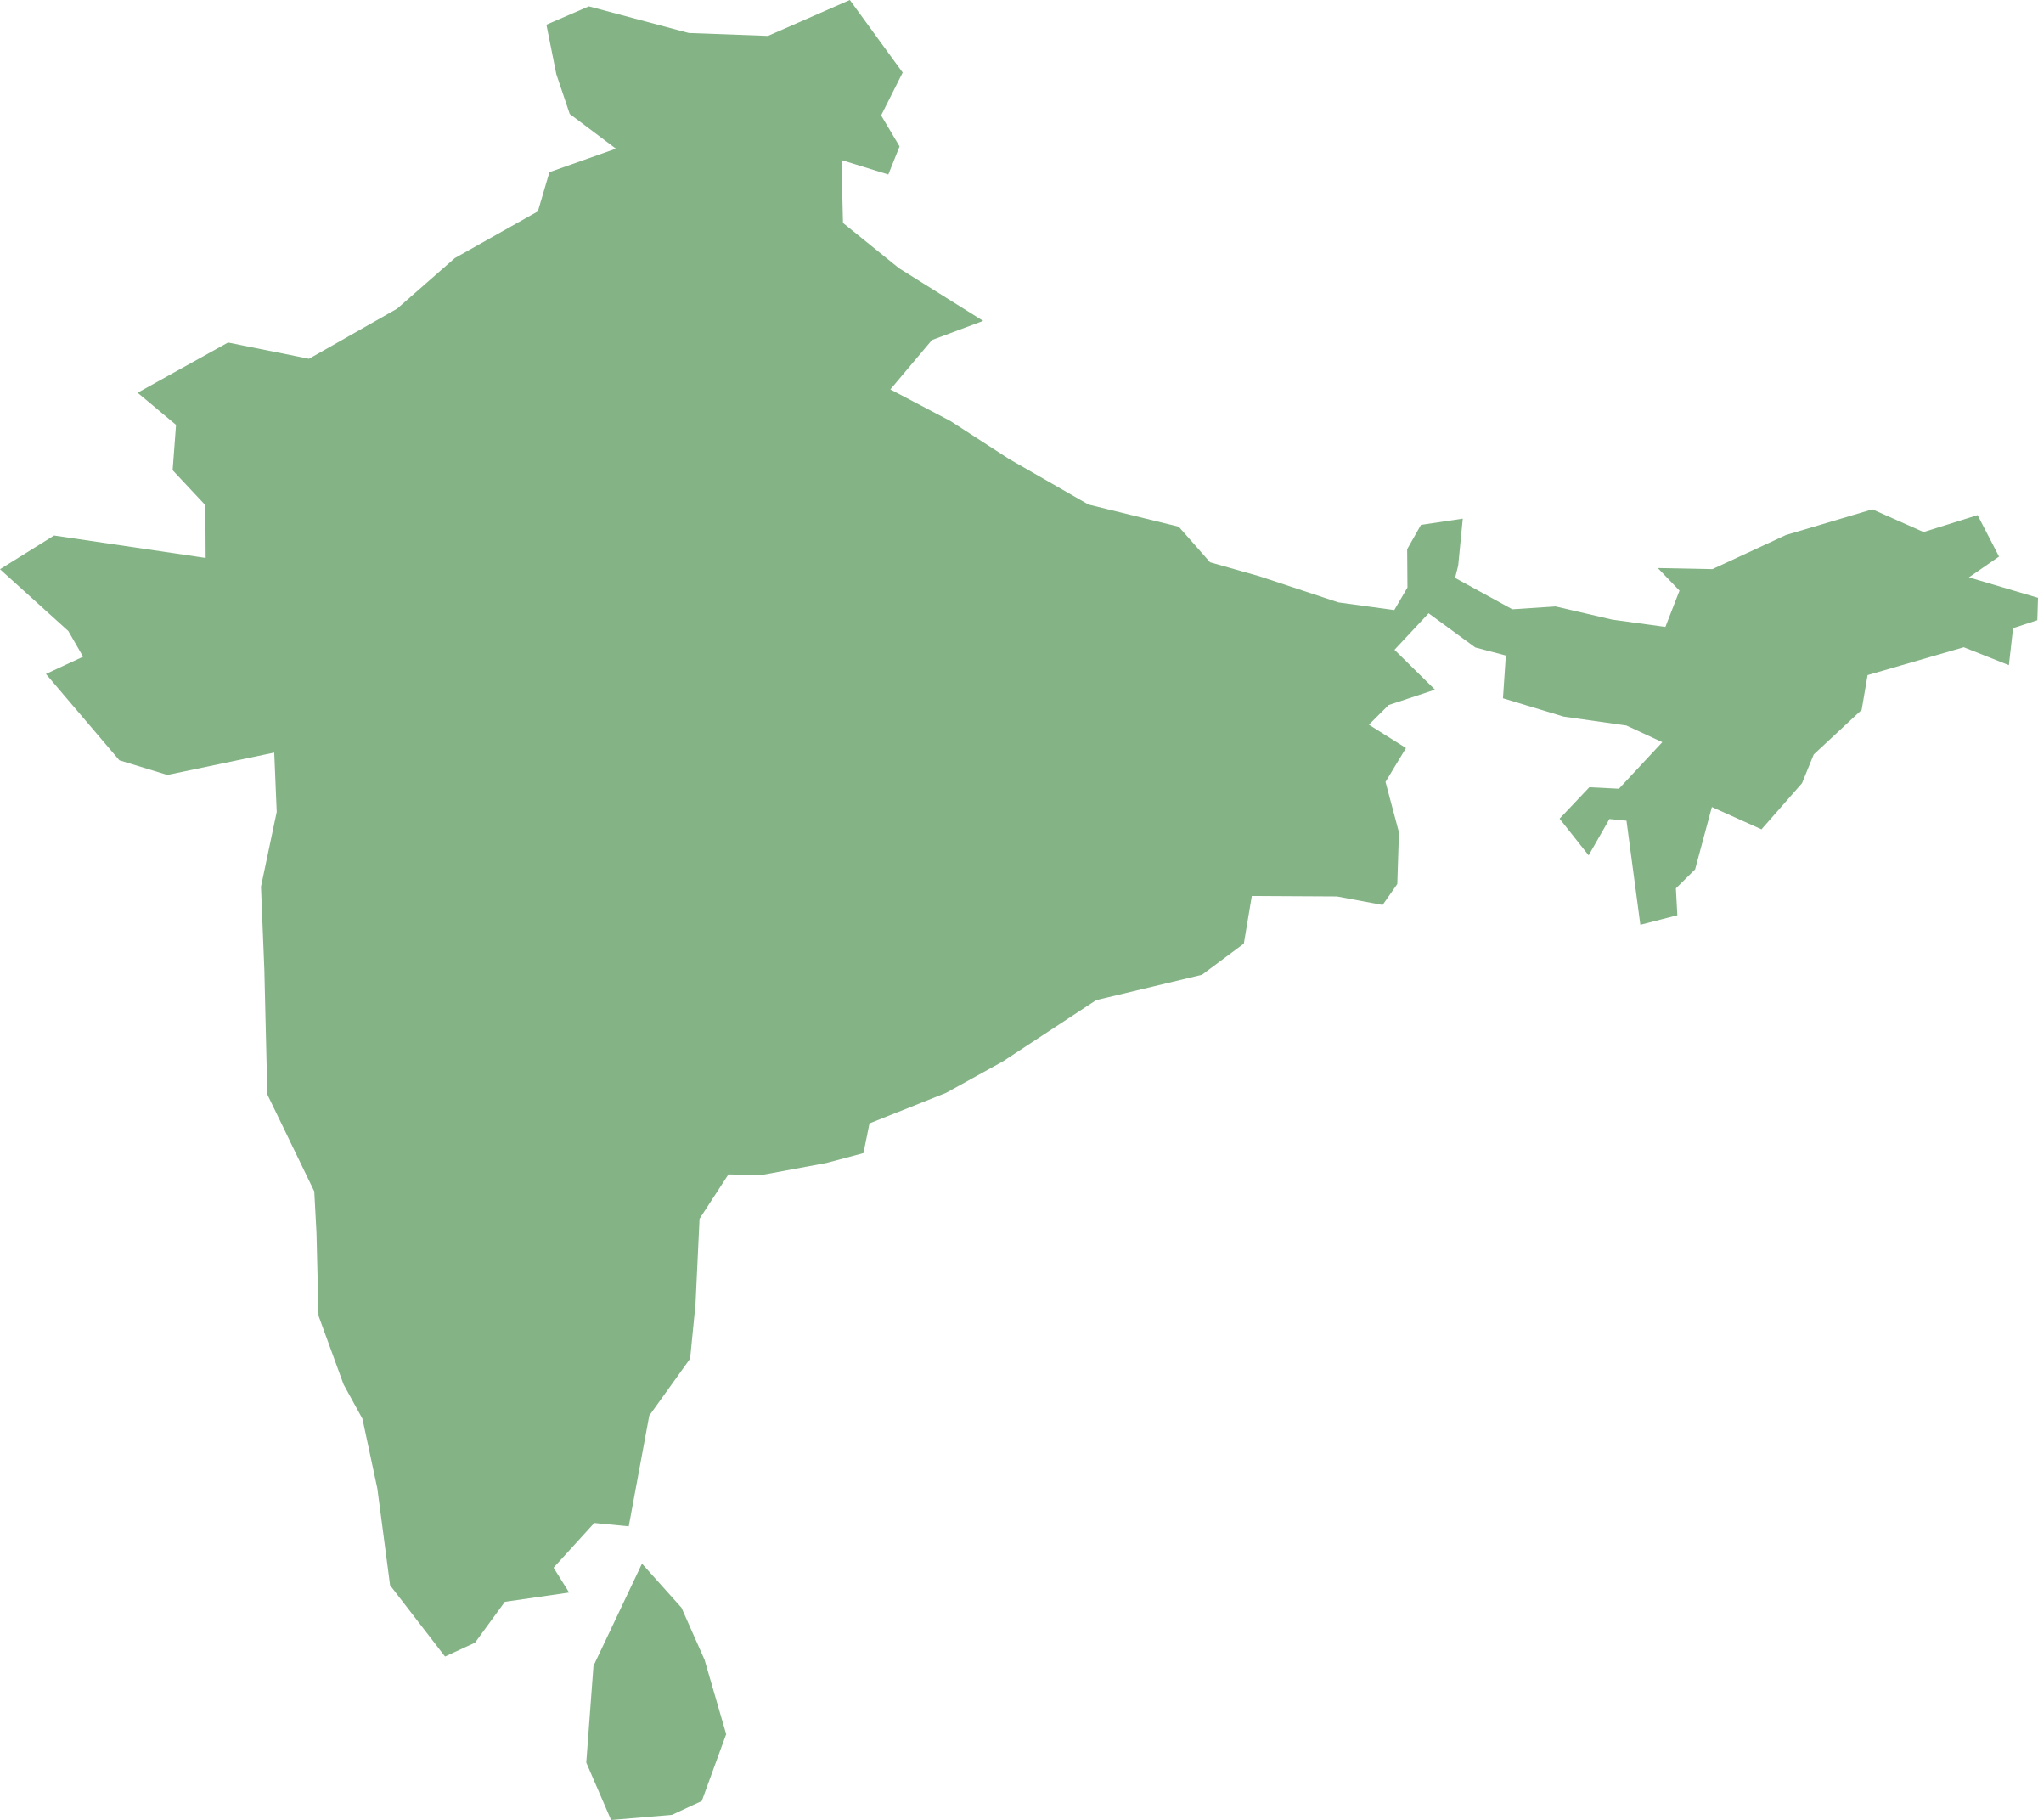 Big Image - Map Of India Transparent (2400x2143)